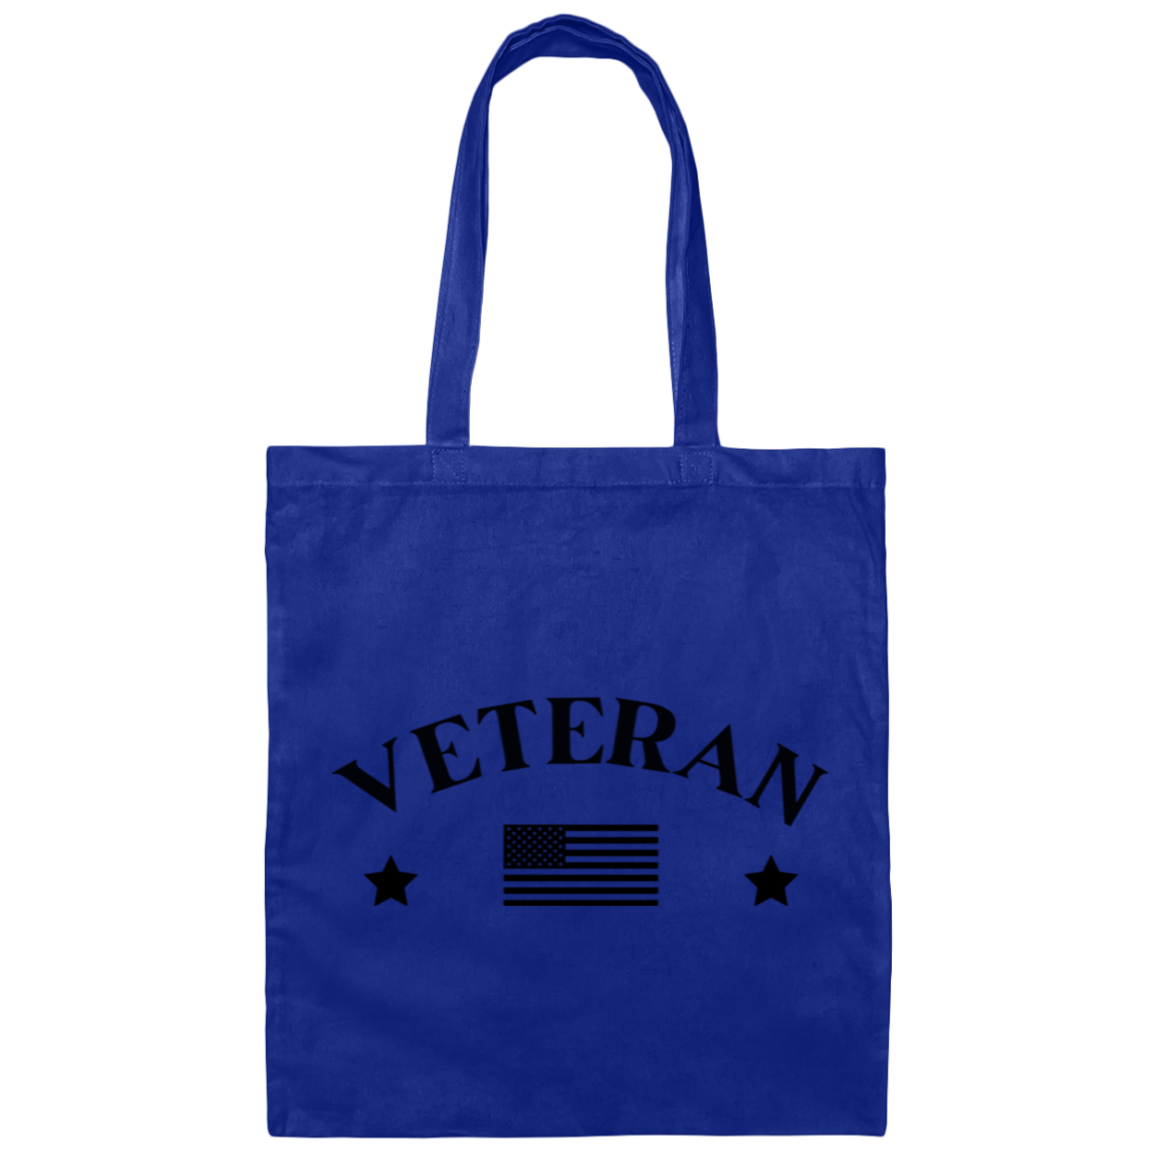 Veteran w/Flag - Tote Bag